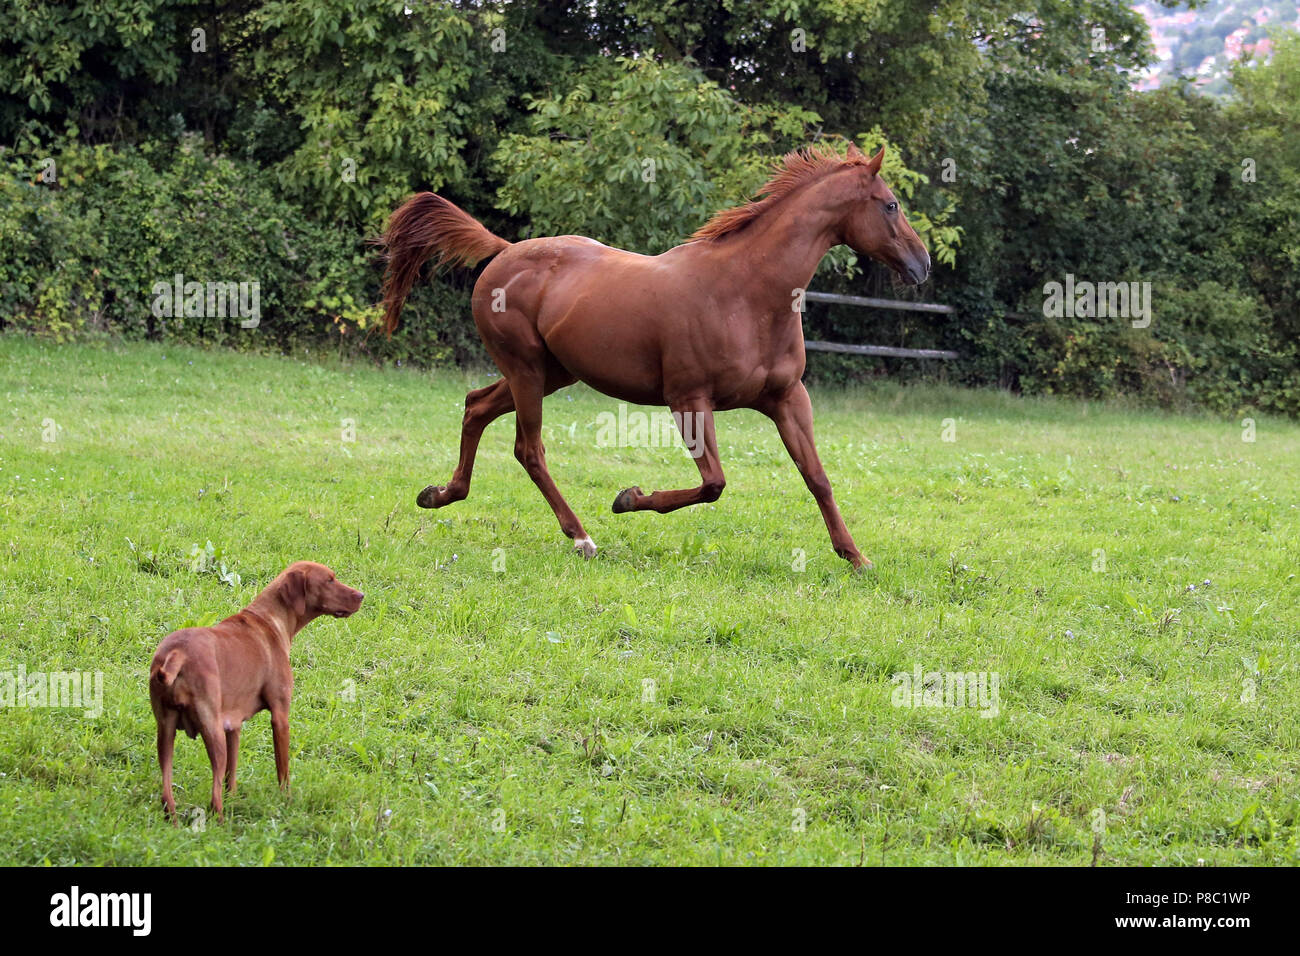 Gestuet Westerberg, cavallo trotto con una coda sollevata davanti a un cane al pascolo Foto Stock